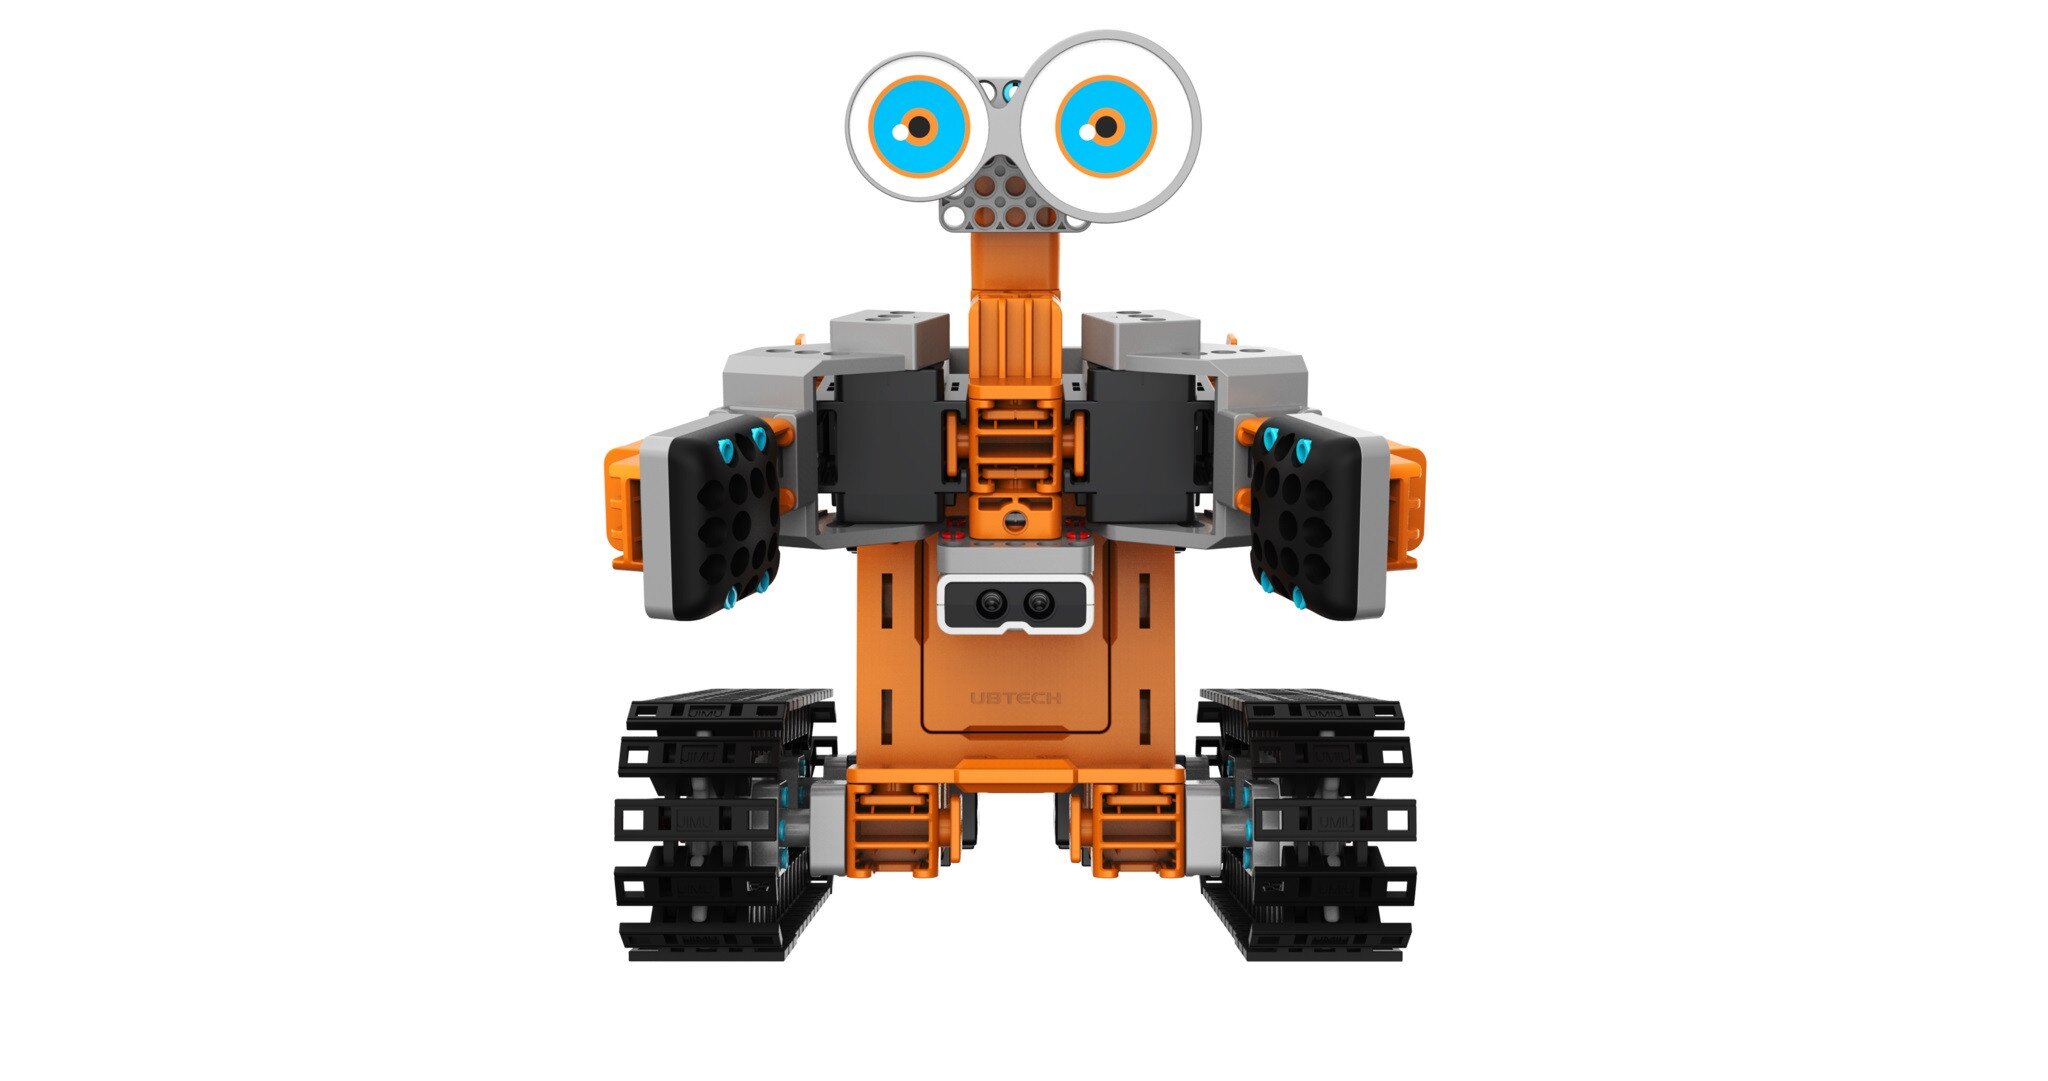 Ubtech Robots Jimu Robot Tankbot Kit JR0604 Ages 8 #0302 for sale online